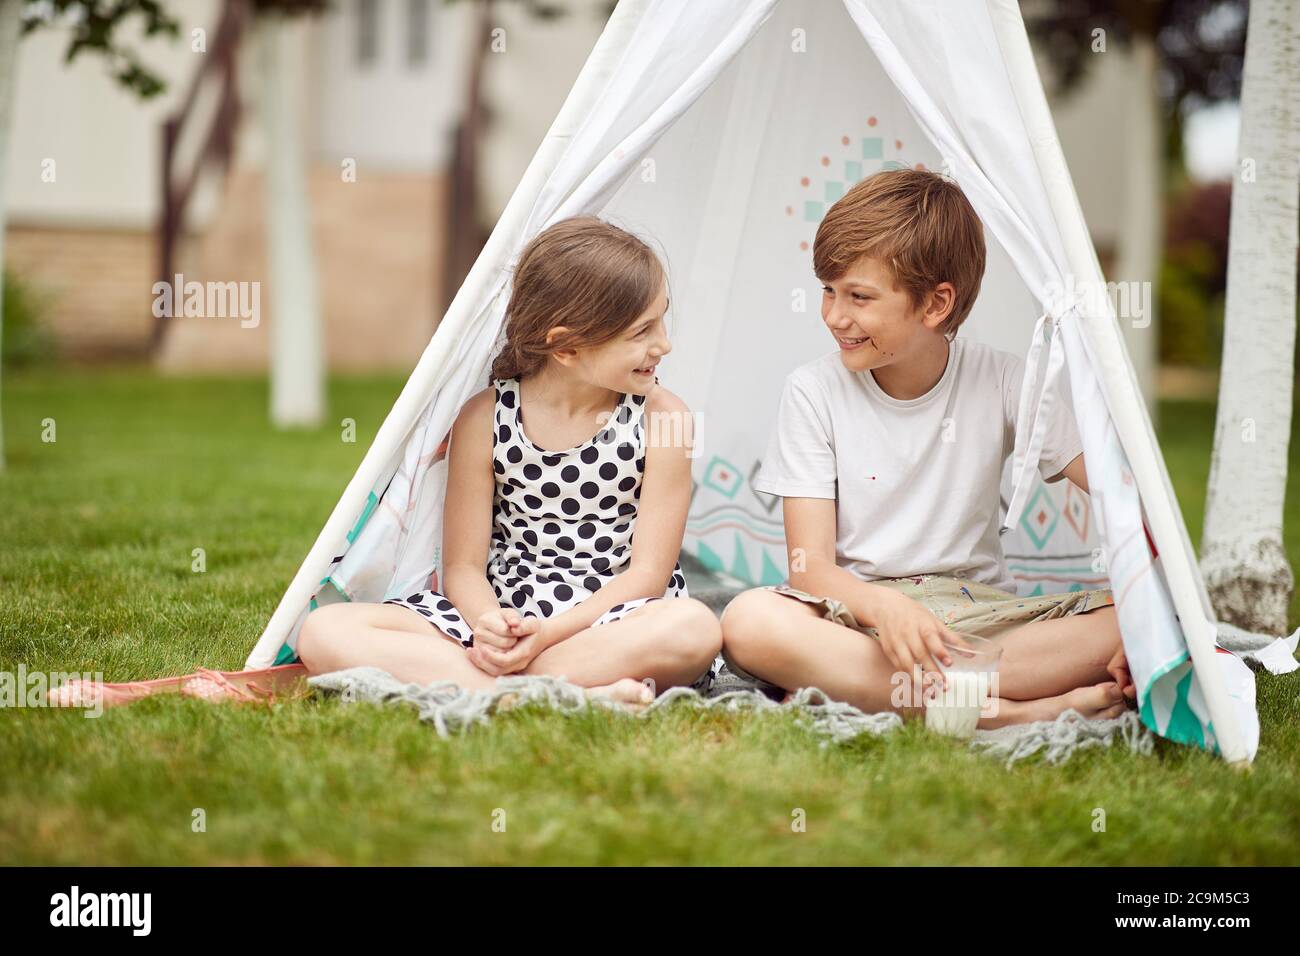 Ragazzo e ragazza seduti in tenda in una giornata di sole Foto Stock